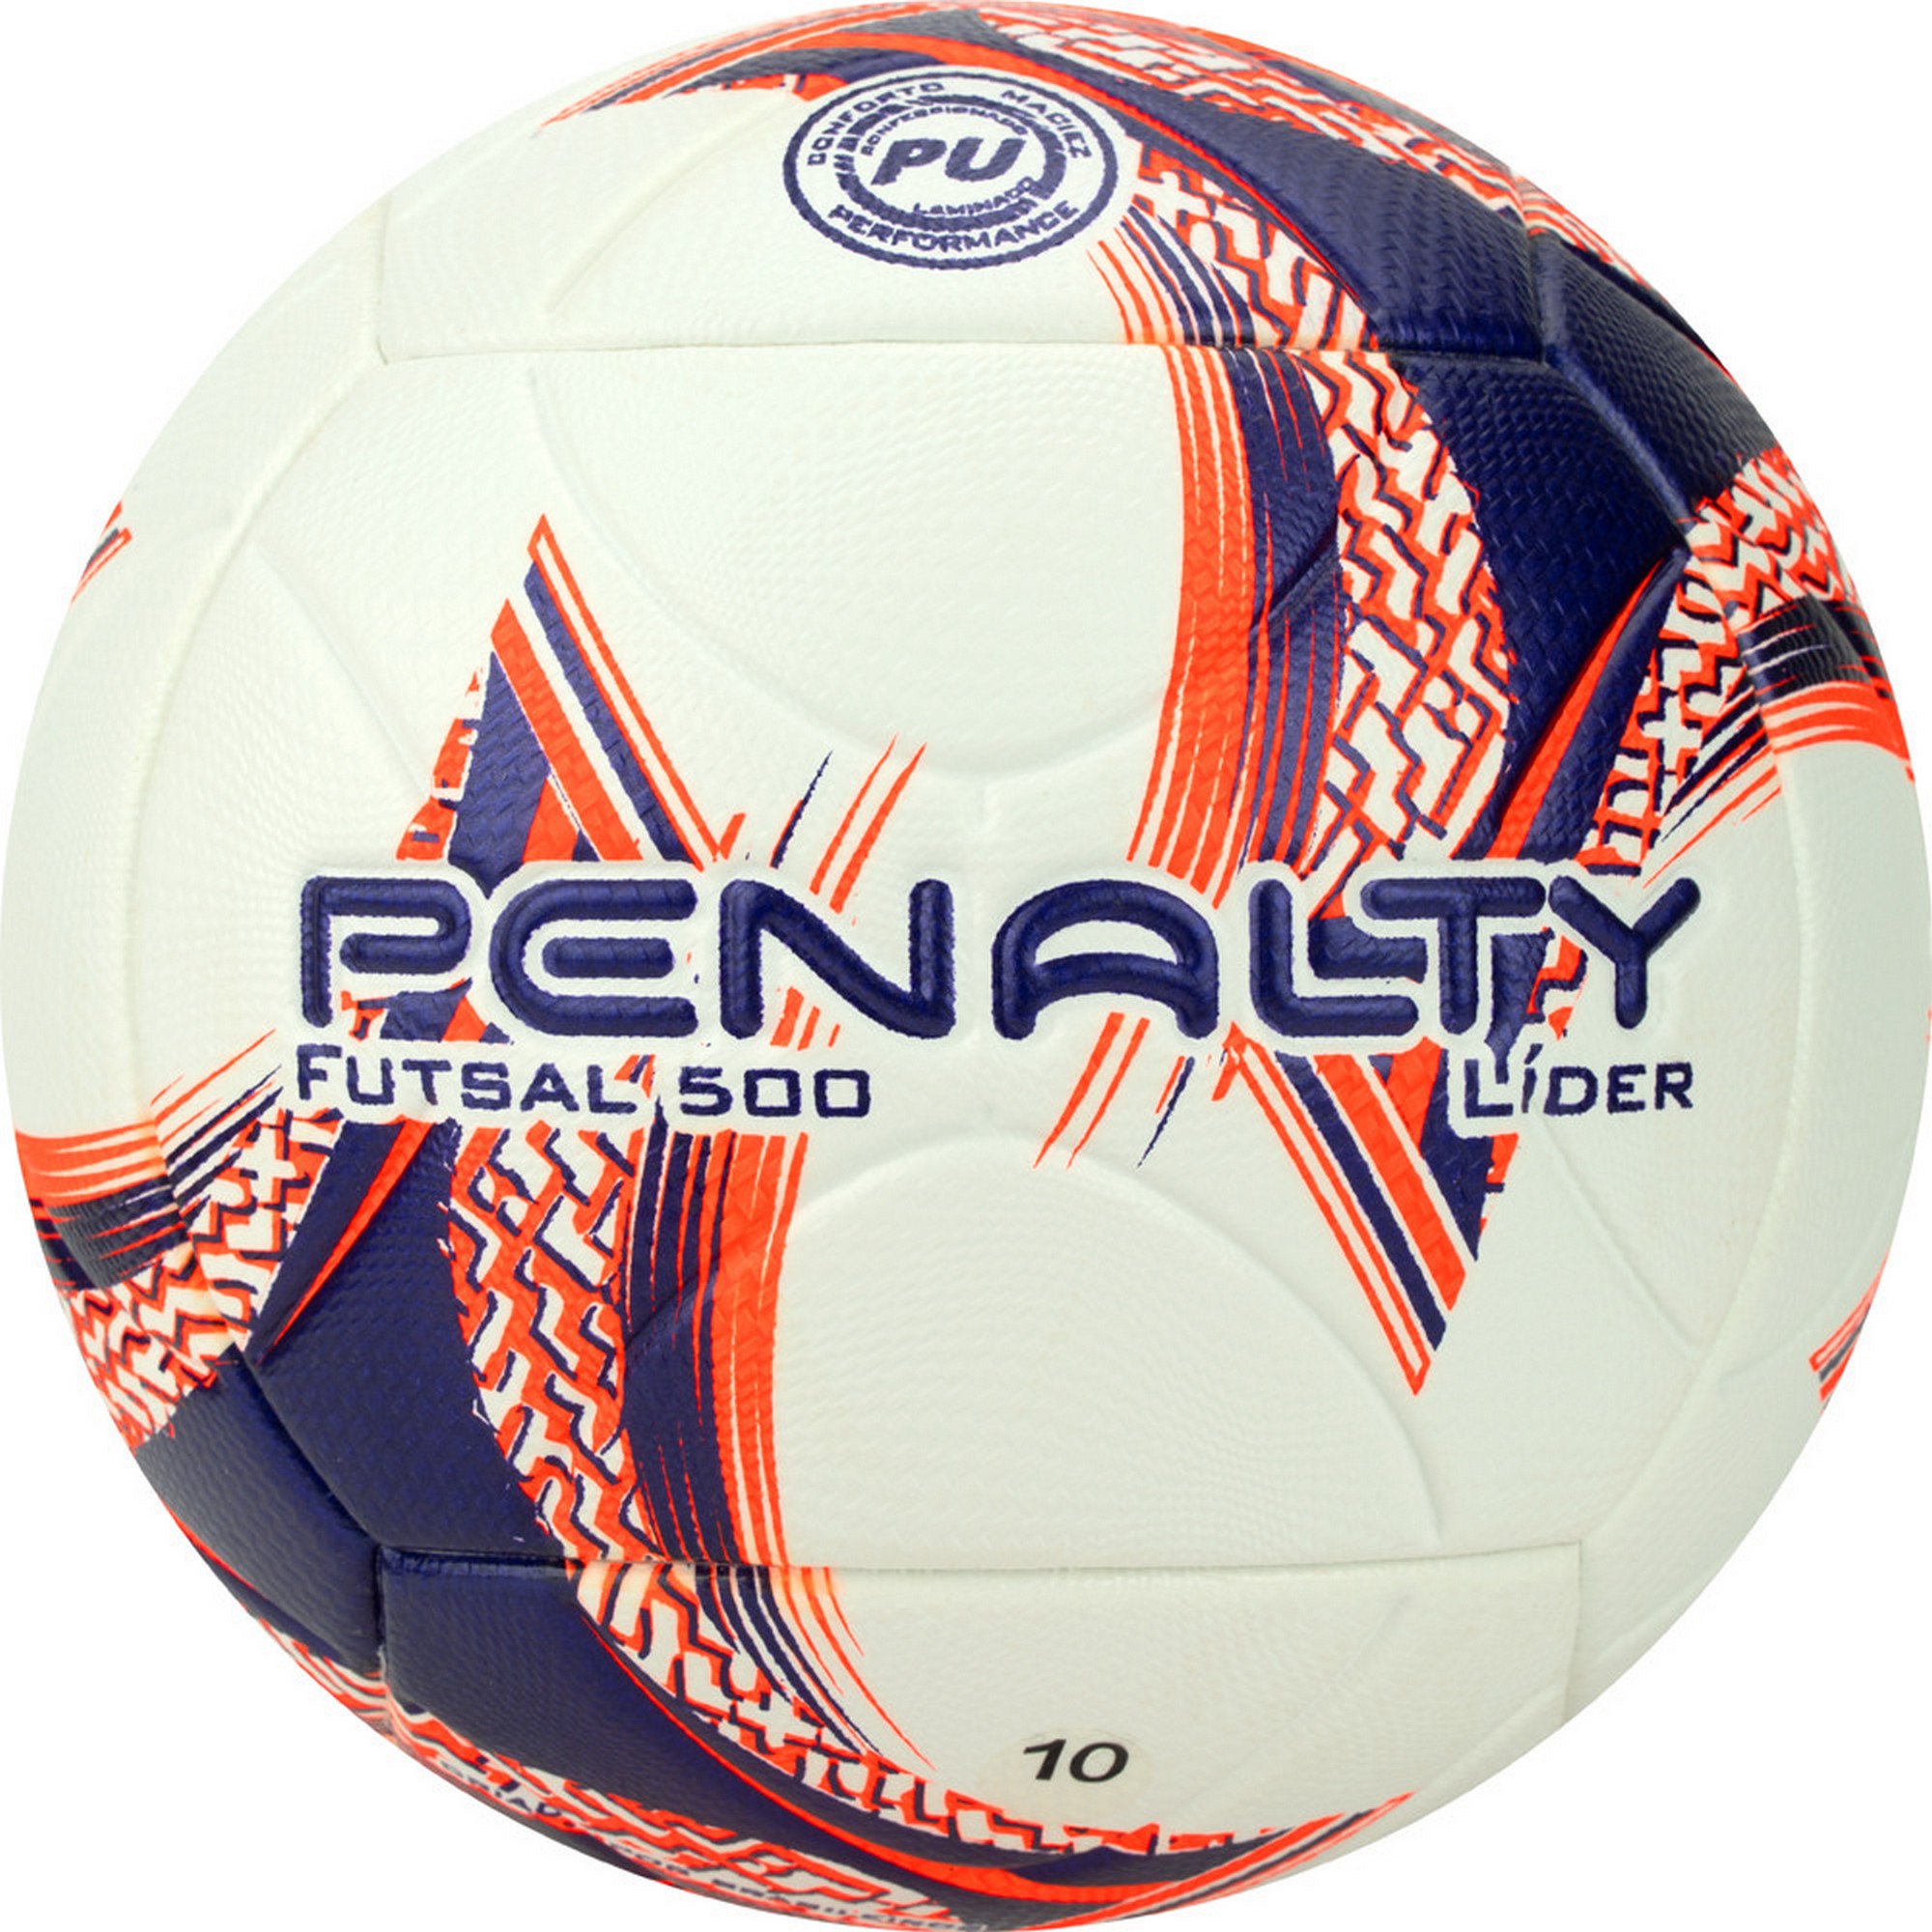   Penalty Bola Futsal Lider XXIII 5213411239-U .4